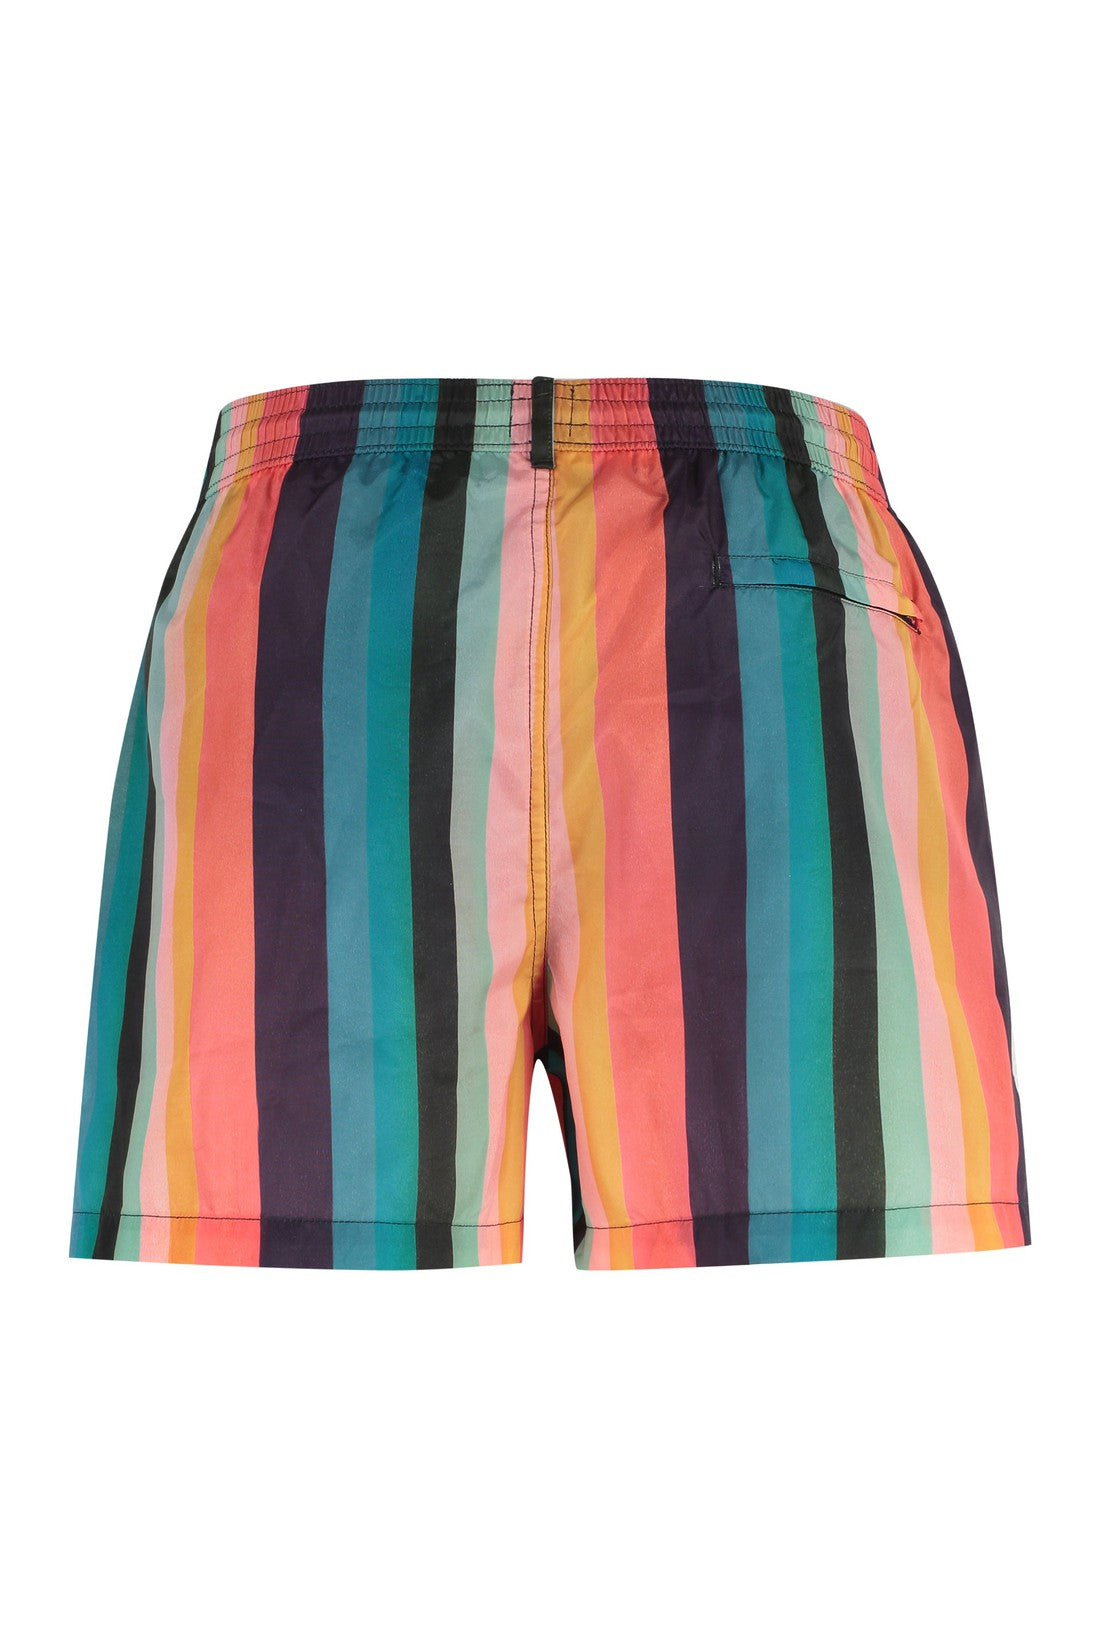 Paul Smith-OUTLET-SALE-Striped swim shorts-ARCHIVIST